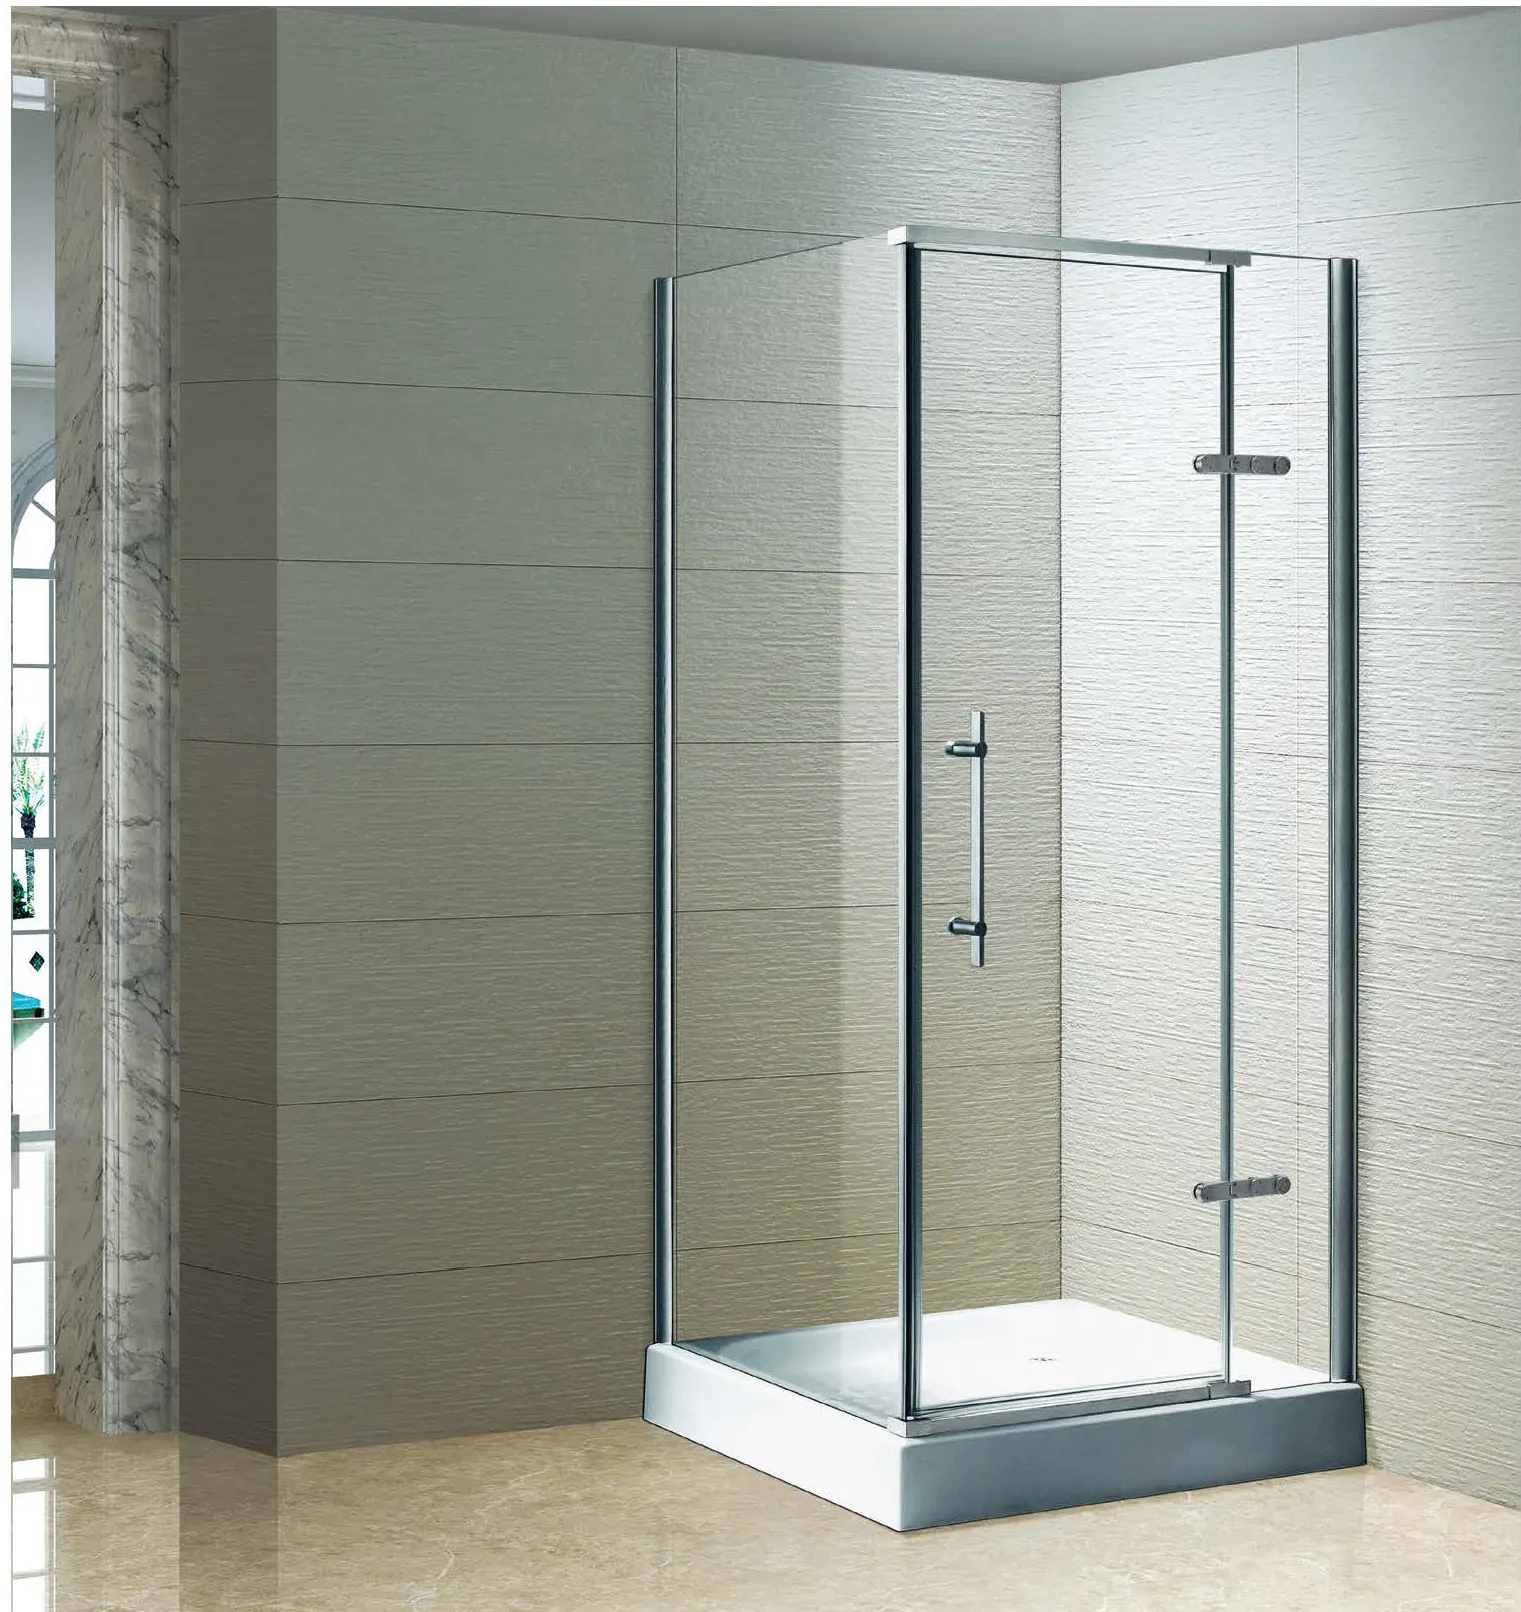 Modern Design Swing Pivot Frameless Shower Enclosure Bathroom 10mm Tempered Glass Corner Shower Room